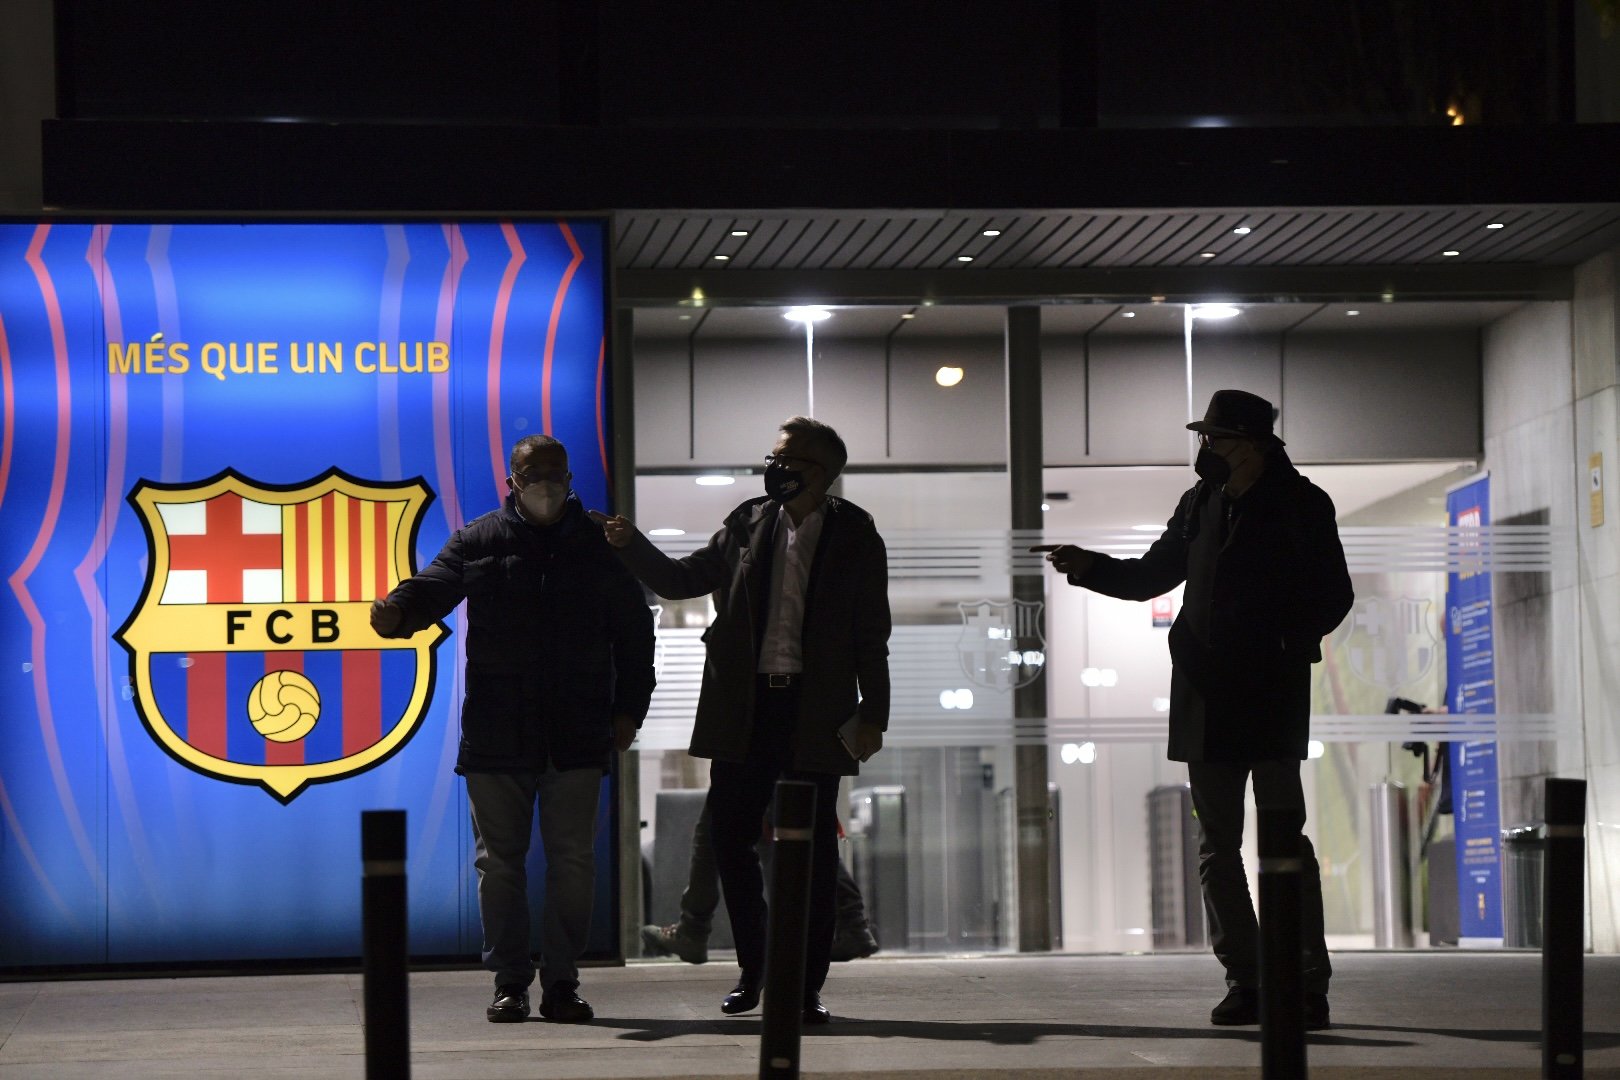 El Barça hace autocrítica y tilda de "obsoleto" su proceso electoral